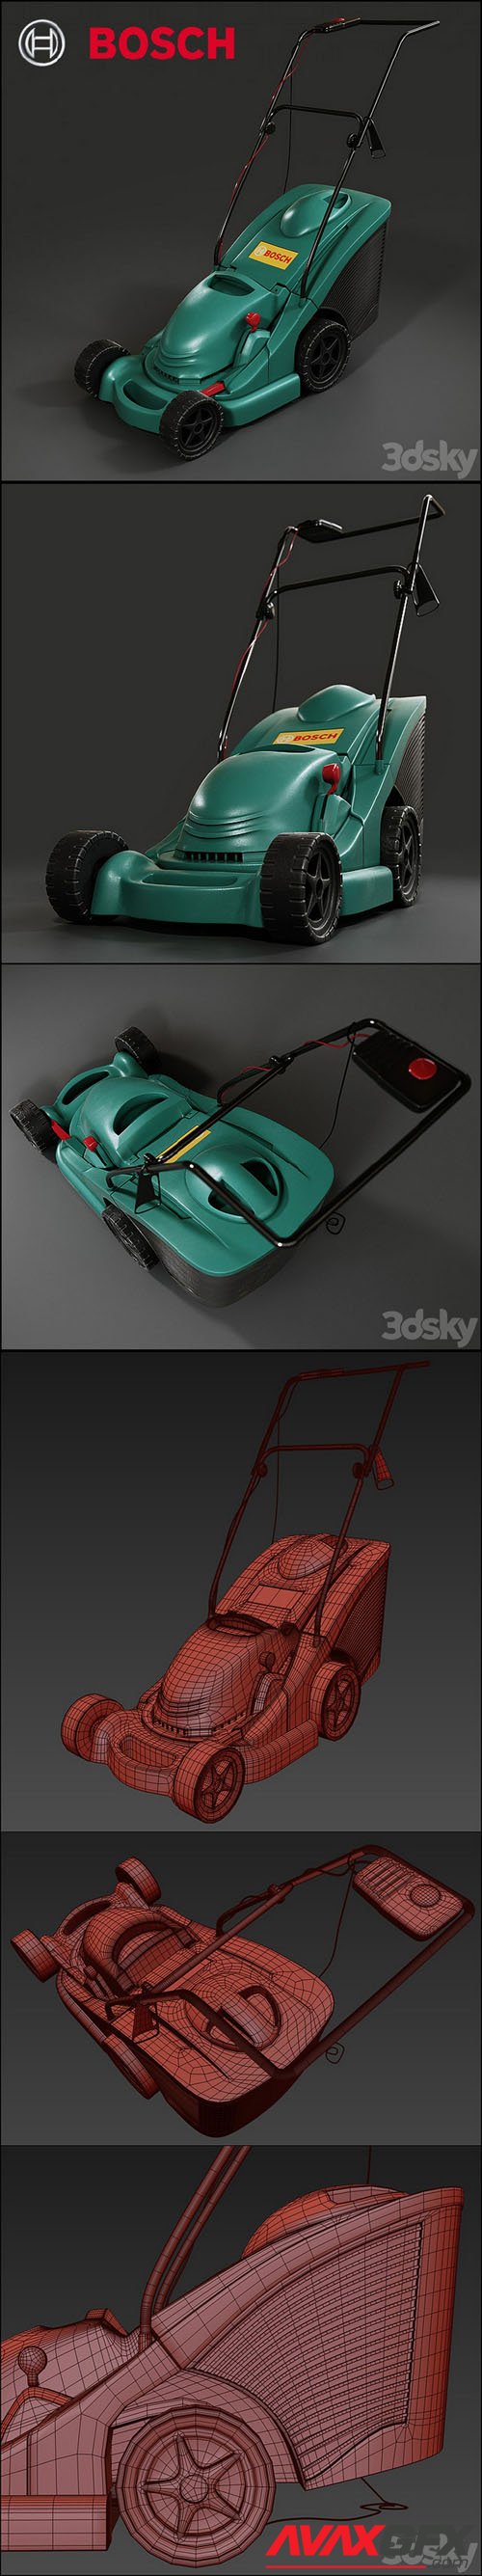 Bosch Lawn Mowers – 3D Model